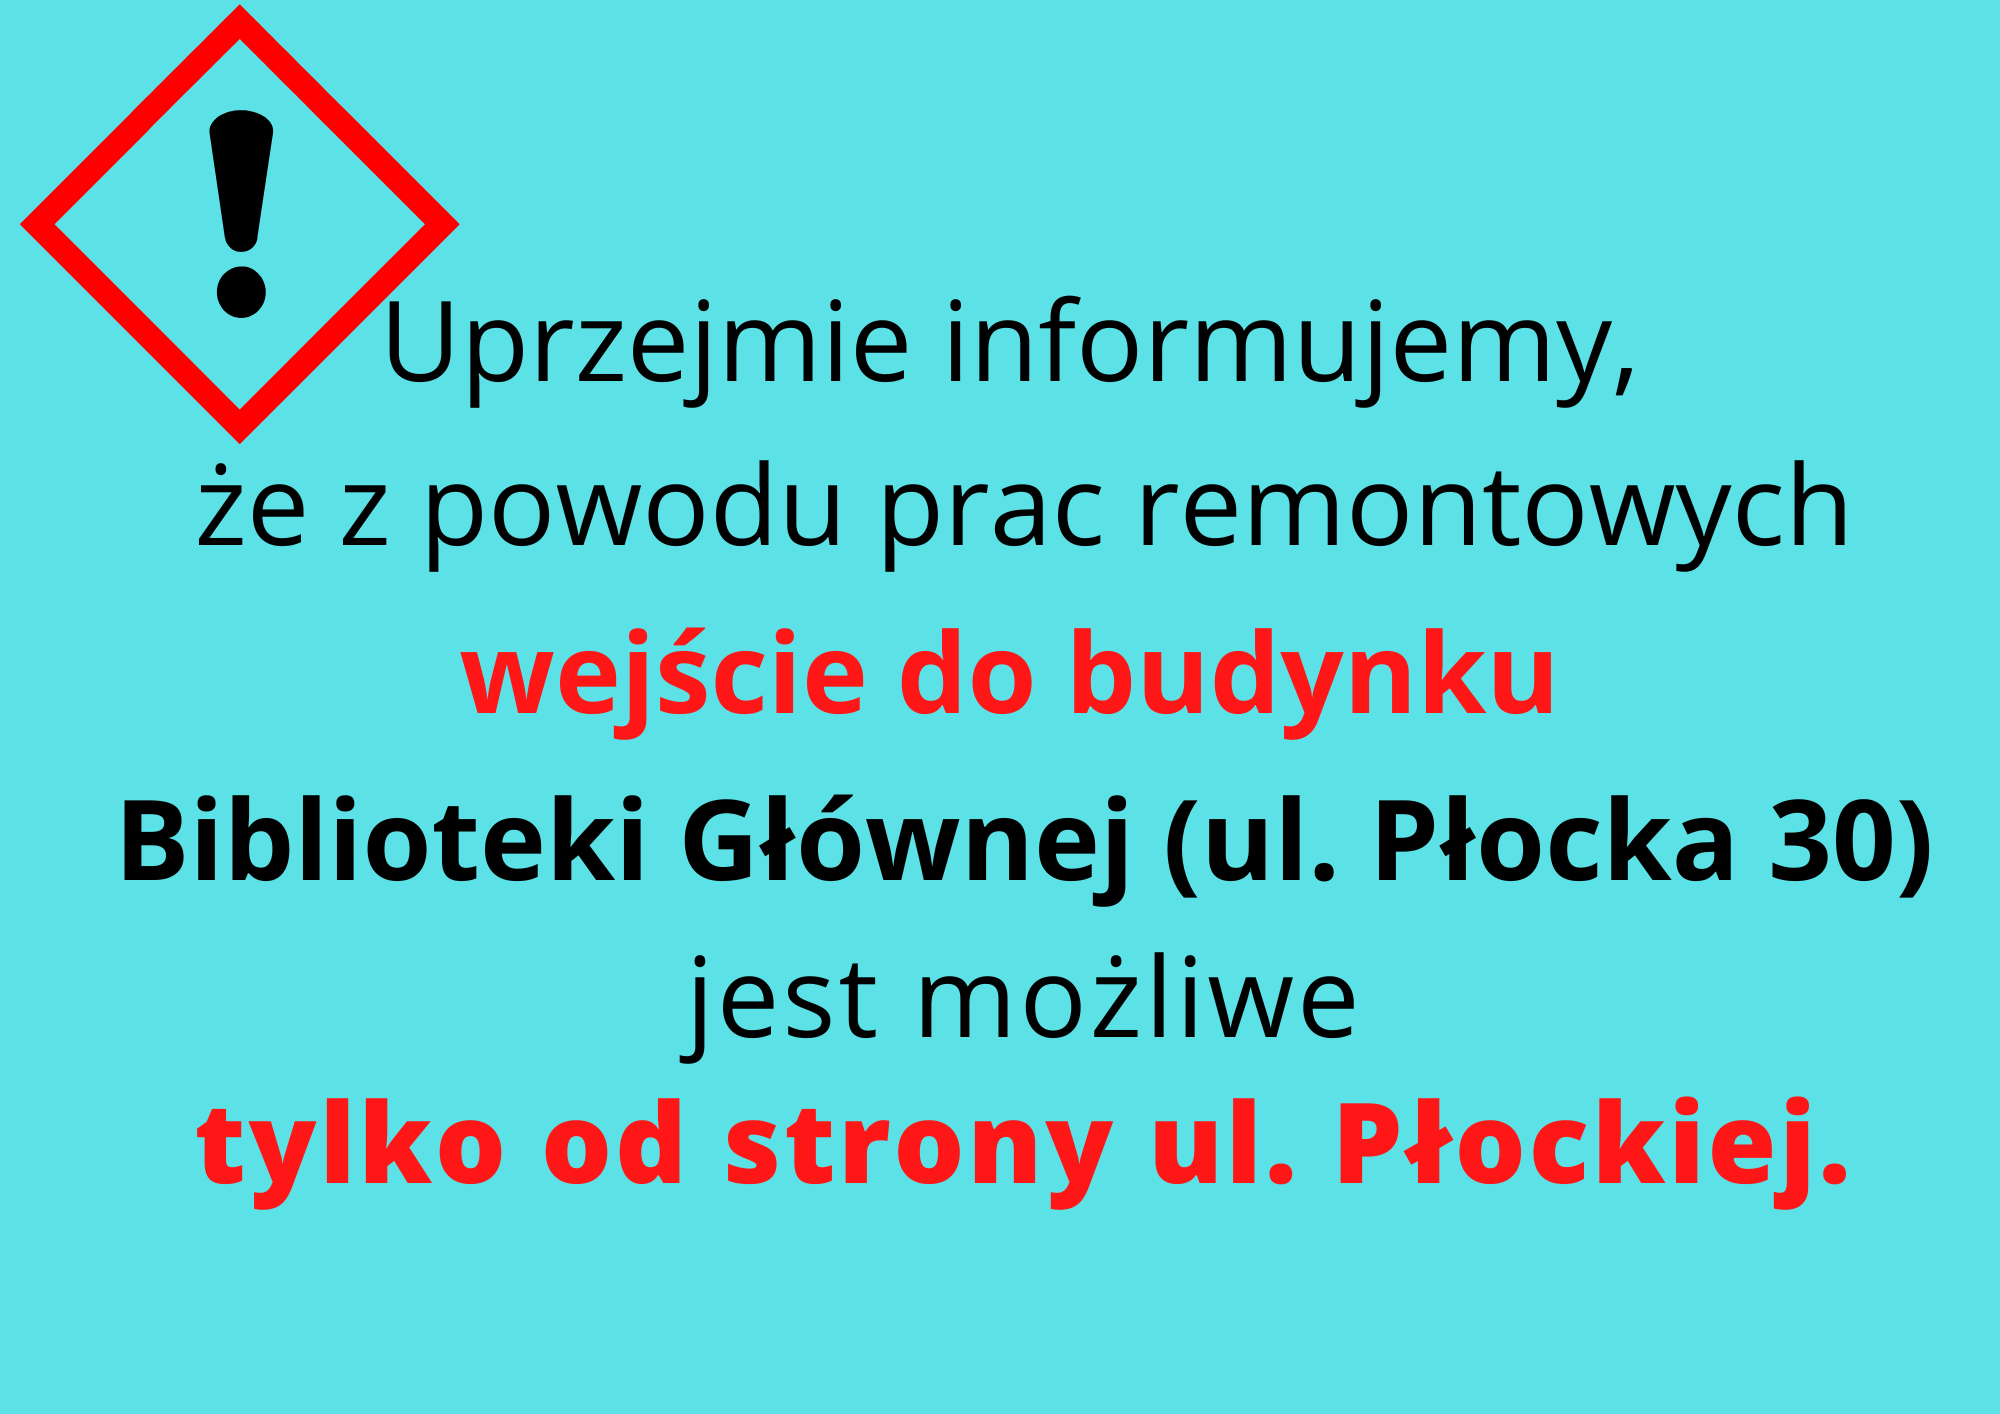 Uprzejmie informujemy, że z powodu prac remontowych wejście do budynku Biblioteki Głównej (ul. Płocka 30) będzie możliwe tylko od strony ul. Płockiej. 